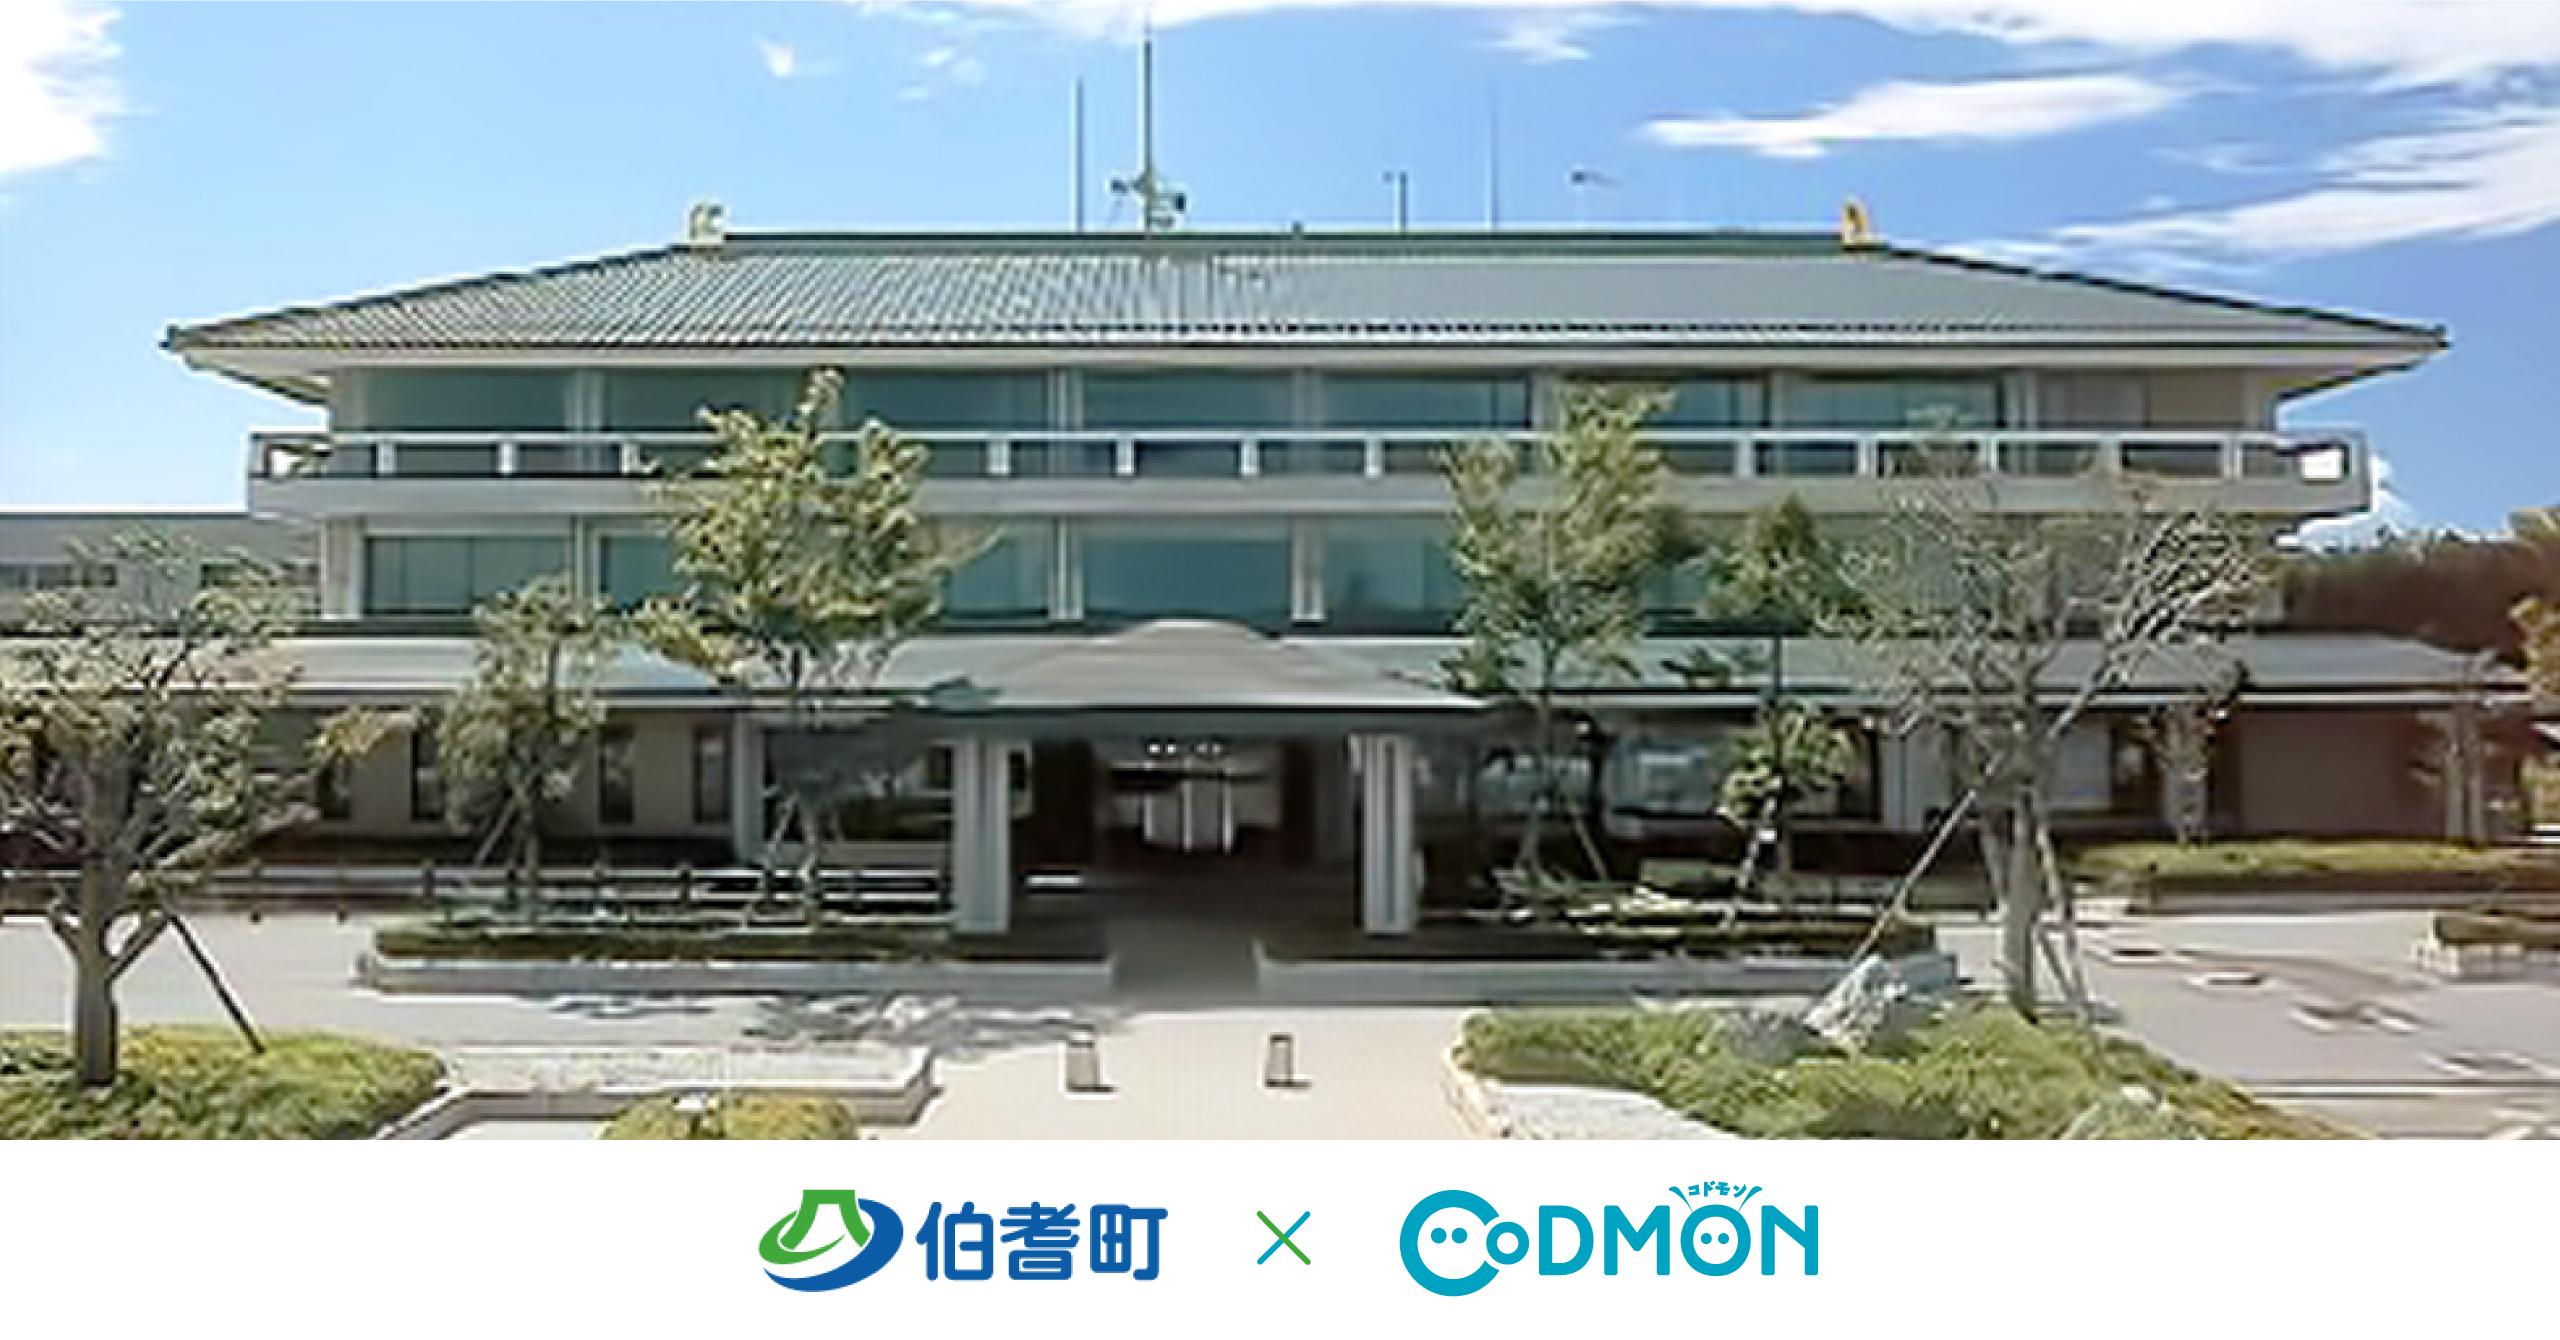 コドモン、鳥取県伯耆町の保育所等において、 保育ICTシステム「CoDMON」導入